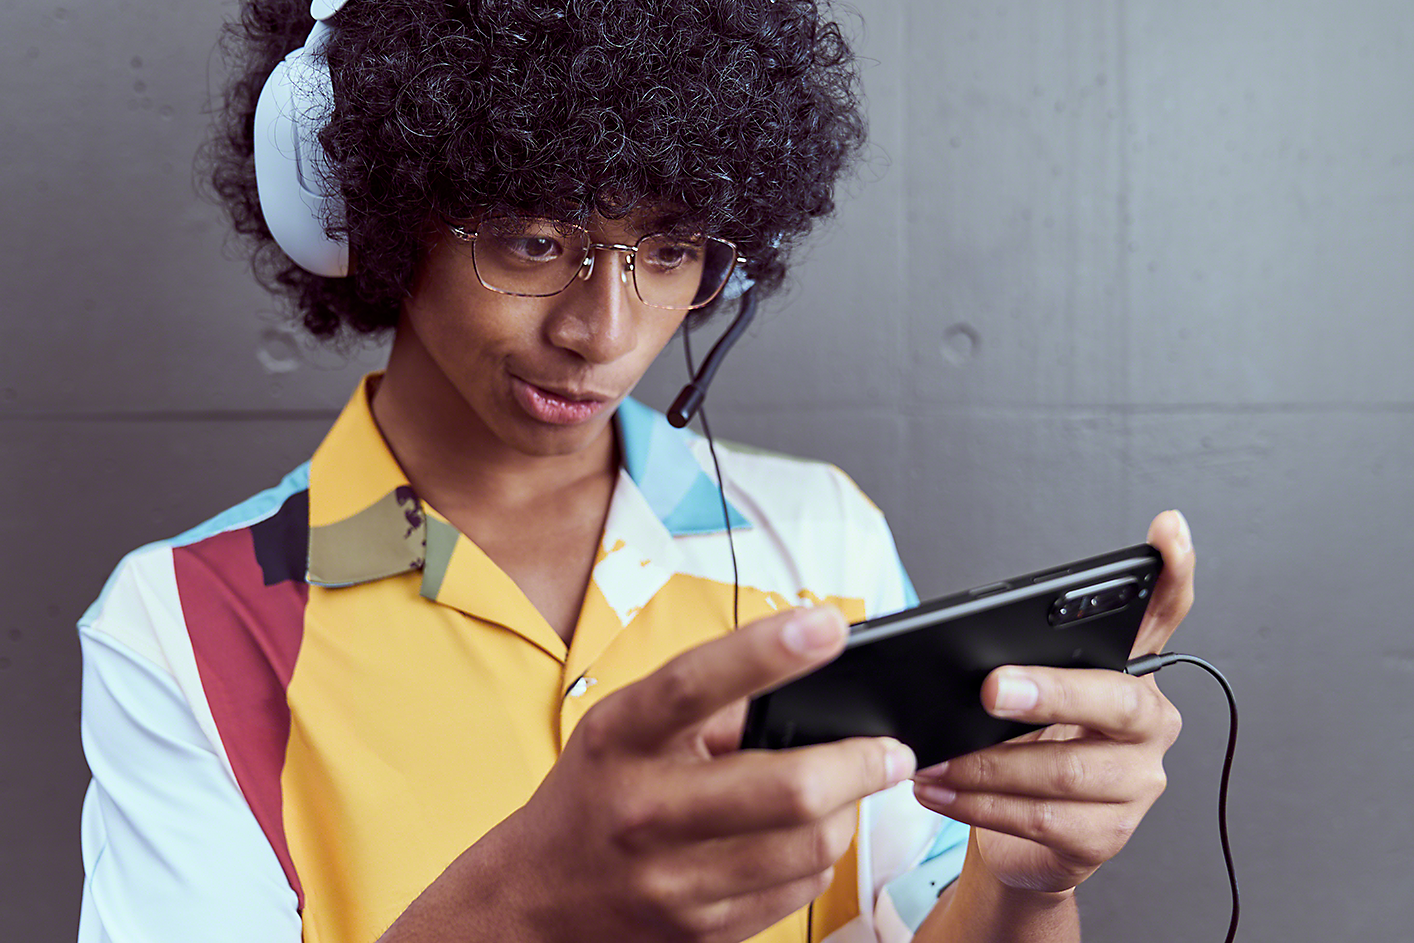 佩戴遊戲耳機的年青男子正在使用 Xperia 5 IV 玩遊戲